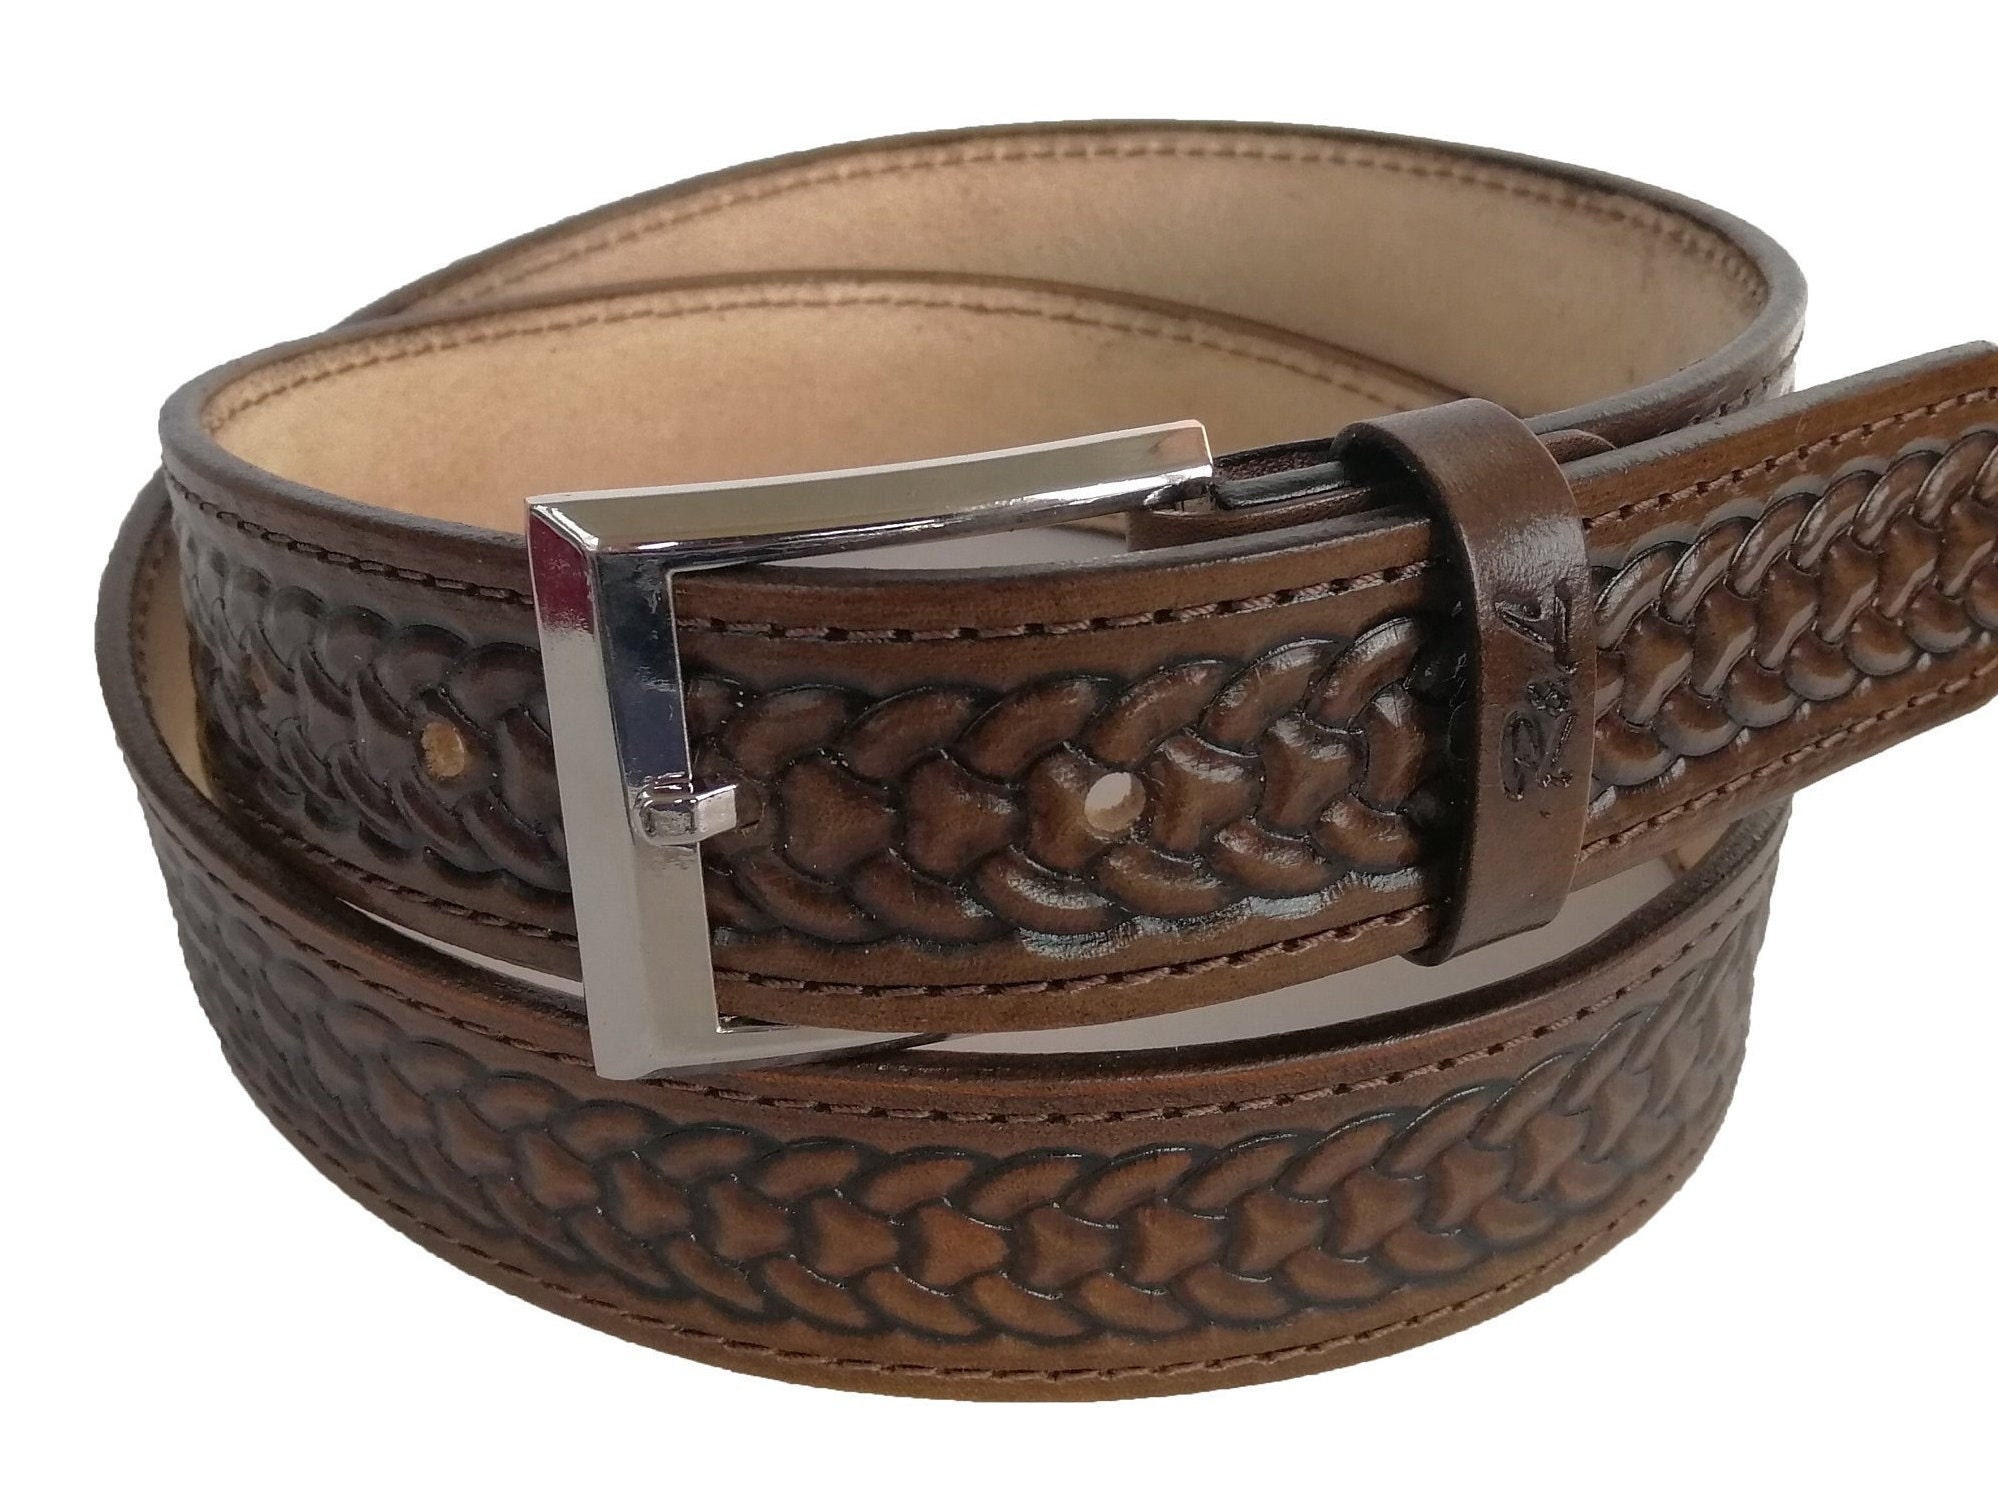 Viking belt leather viking belt leather belt norse belt | Etsy